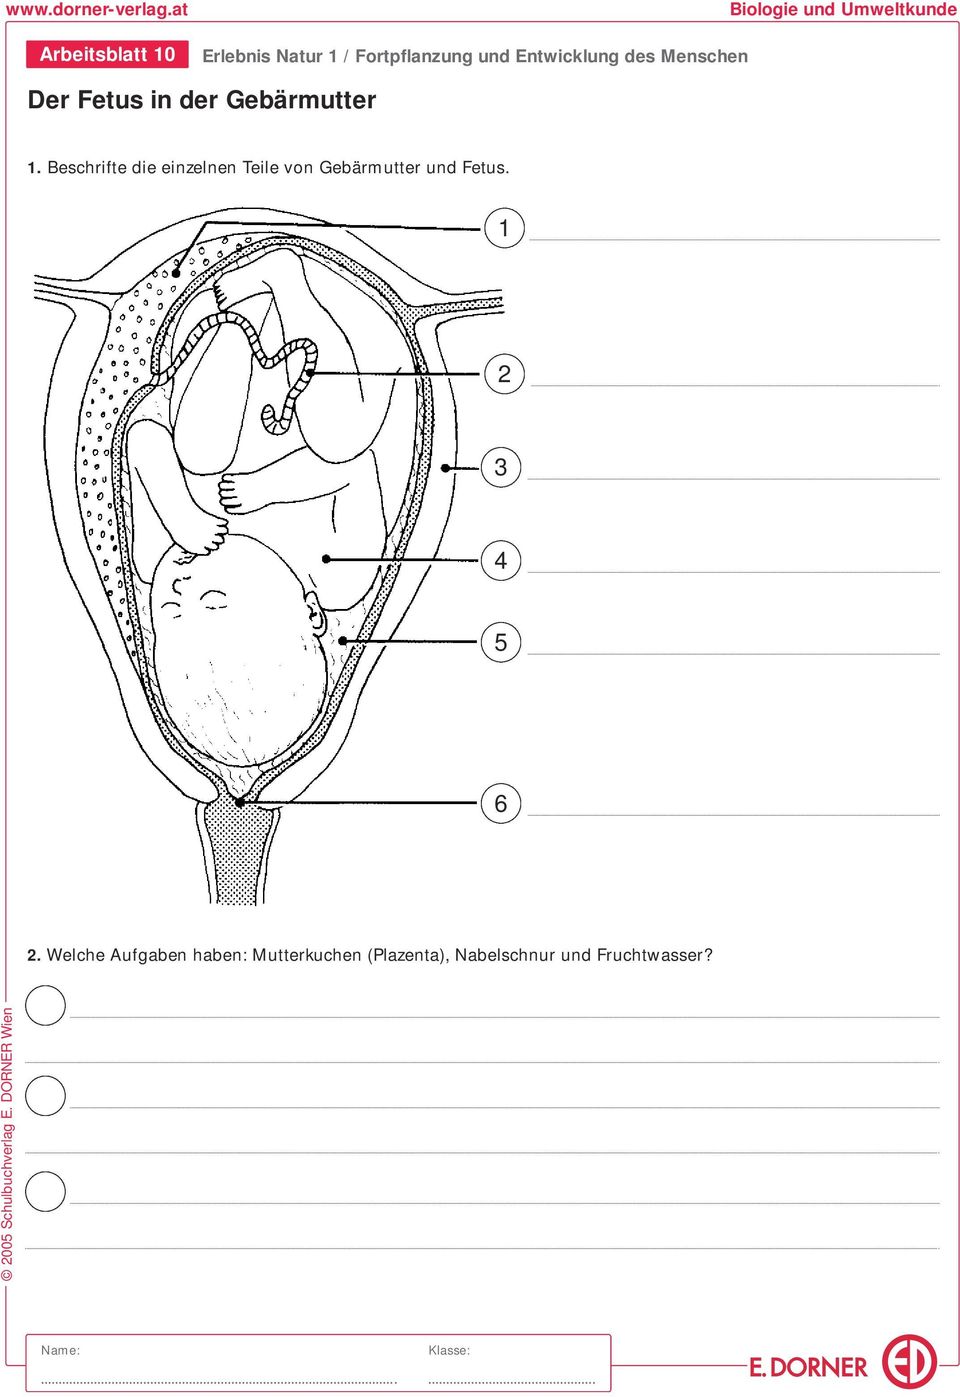 Beschrifte die einzelnen Teile von Gebärmutter und Fetus.